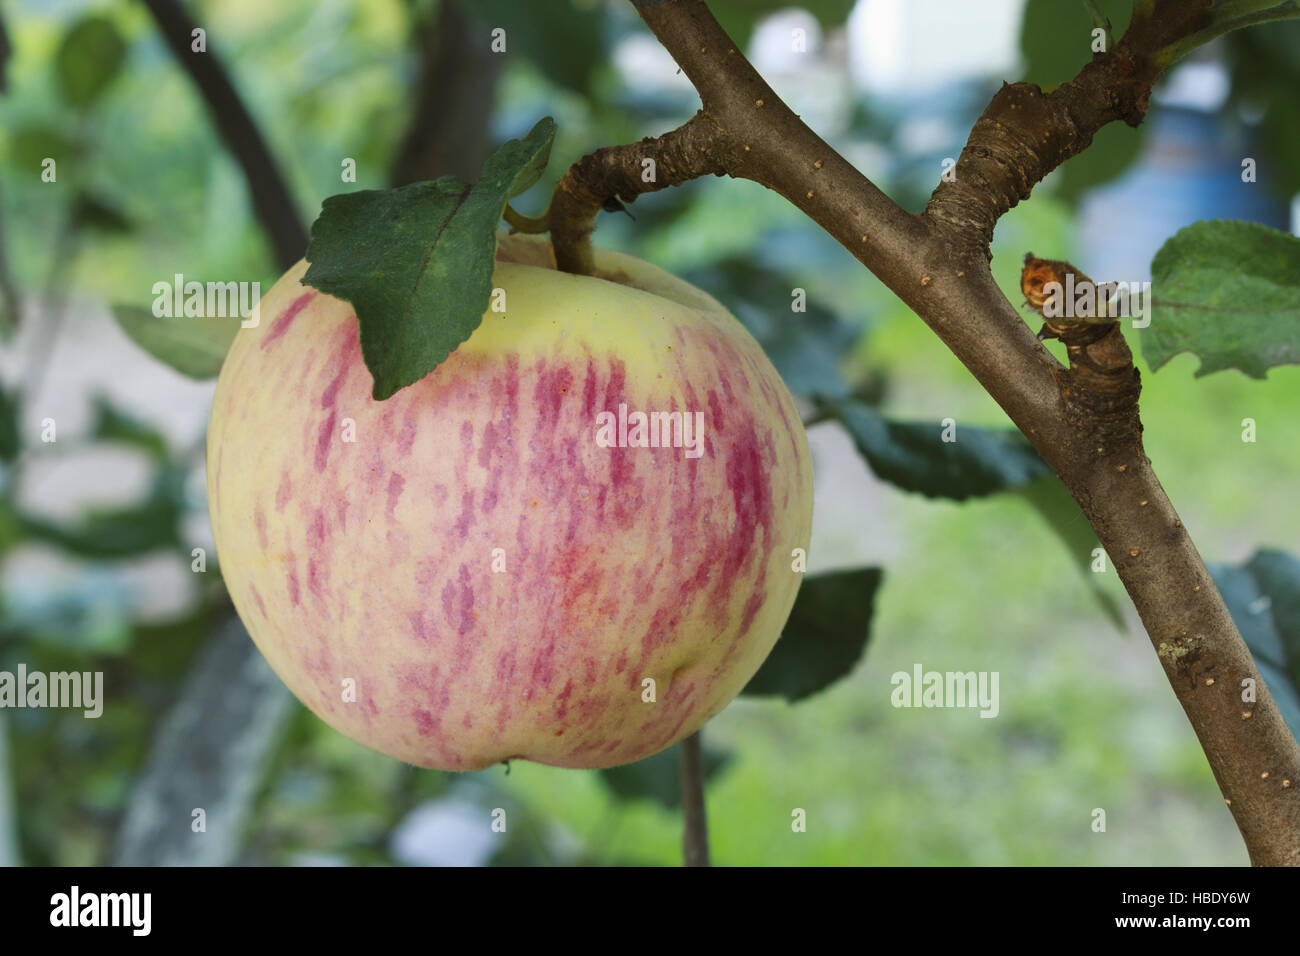 Shiny pink apple sur une branche Banque D'Images